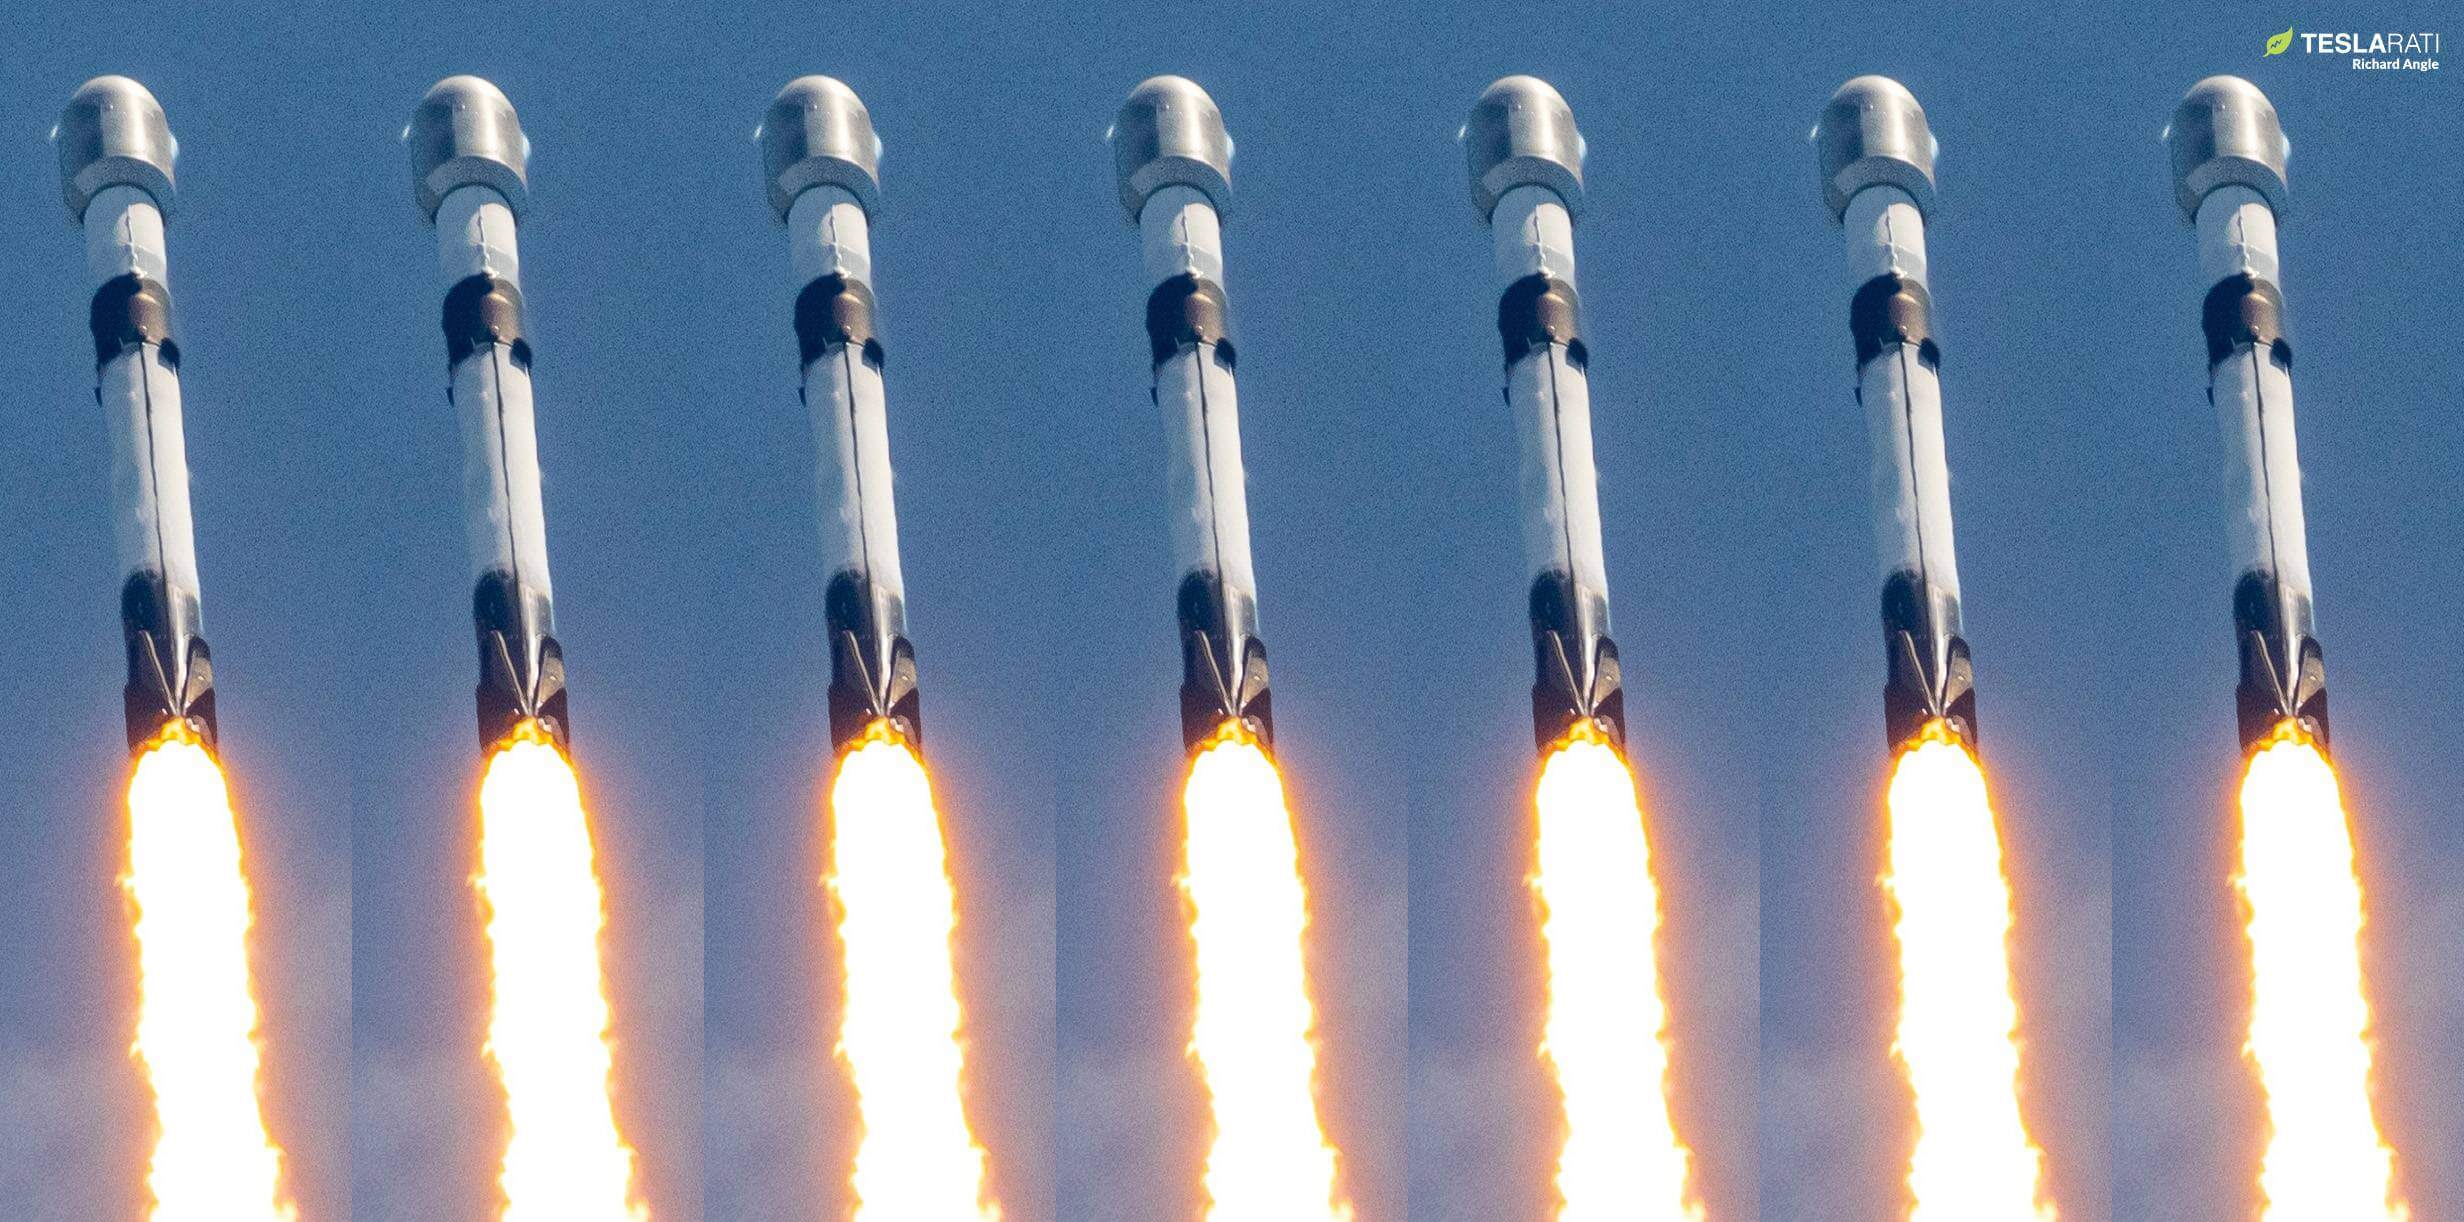 Мета Ілона Маска щодо 100 запусків SpaceX у 2023 році виглядає напрочуд здійсненною